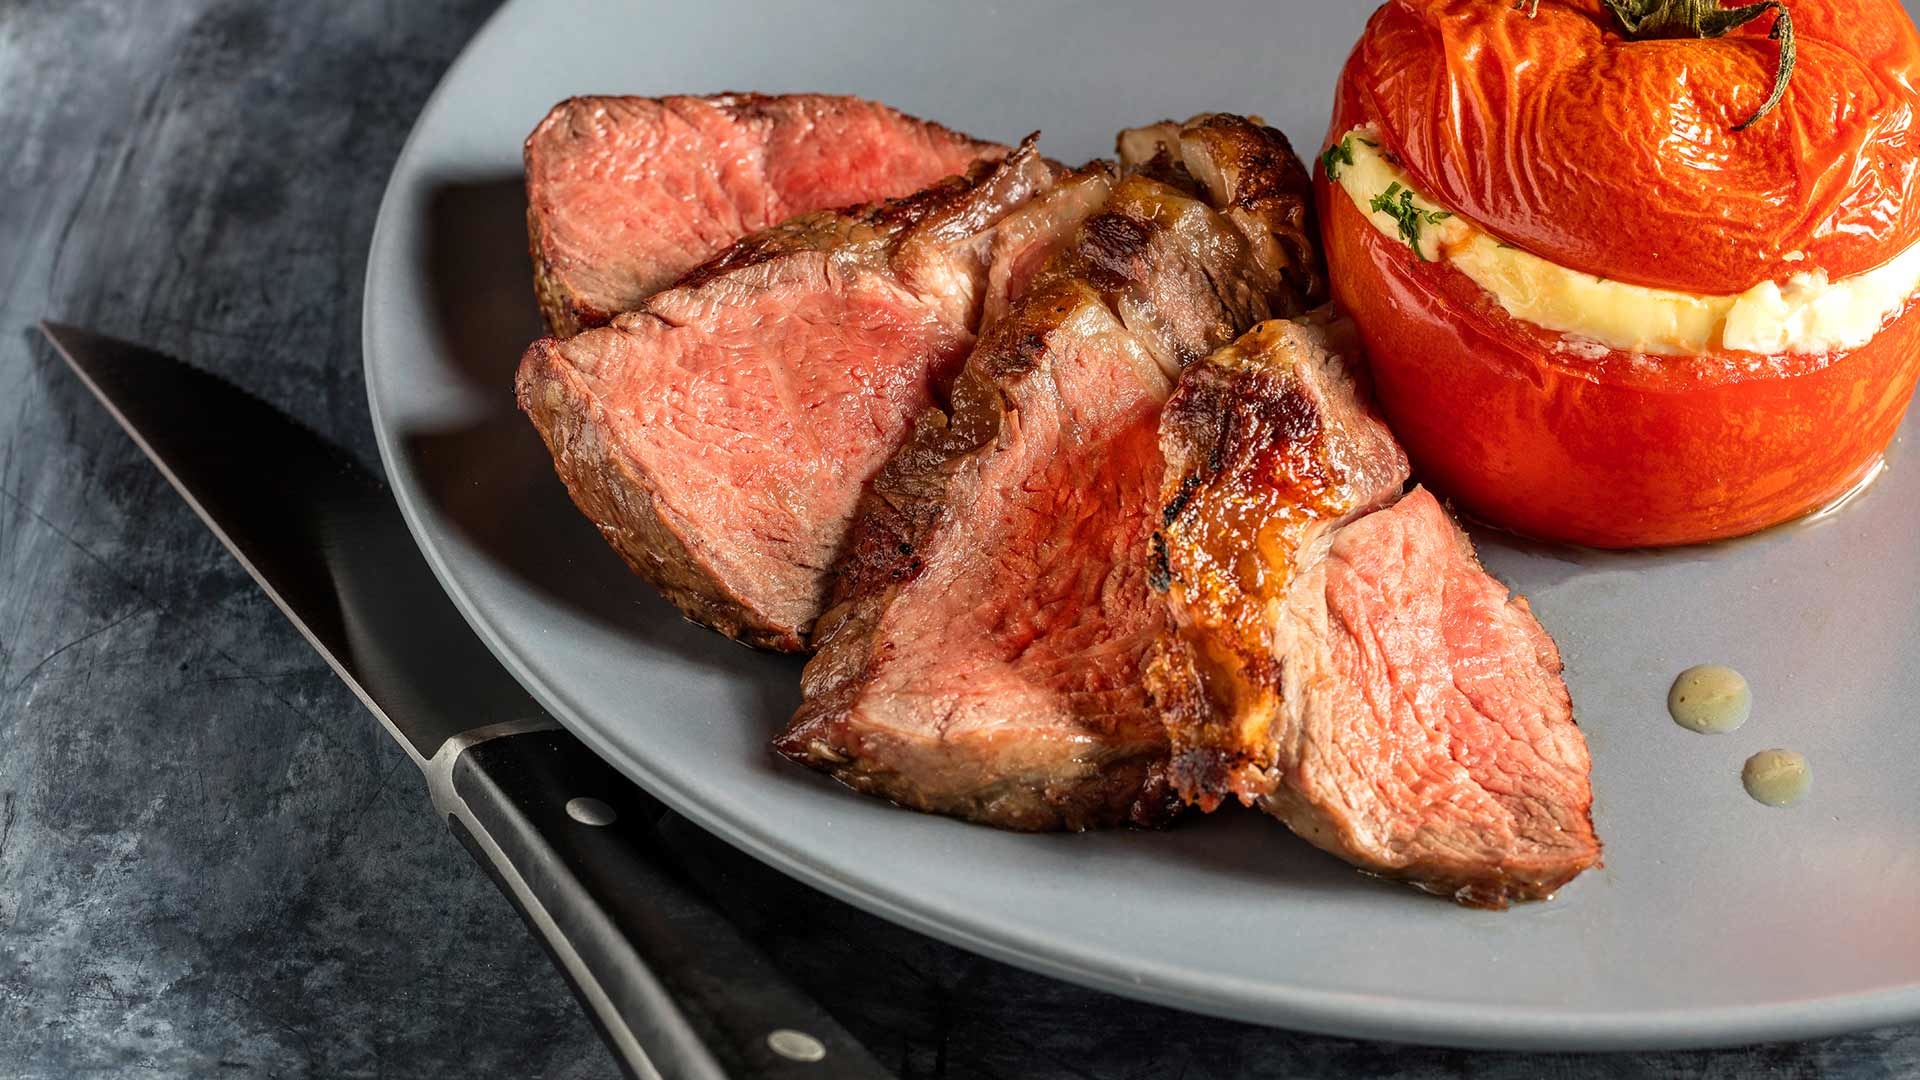  Das perfekte Steak mit gefüllten Tomaten 


